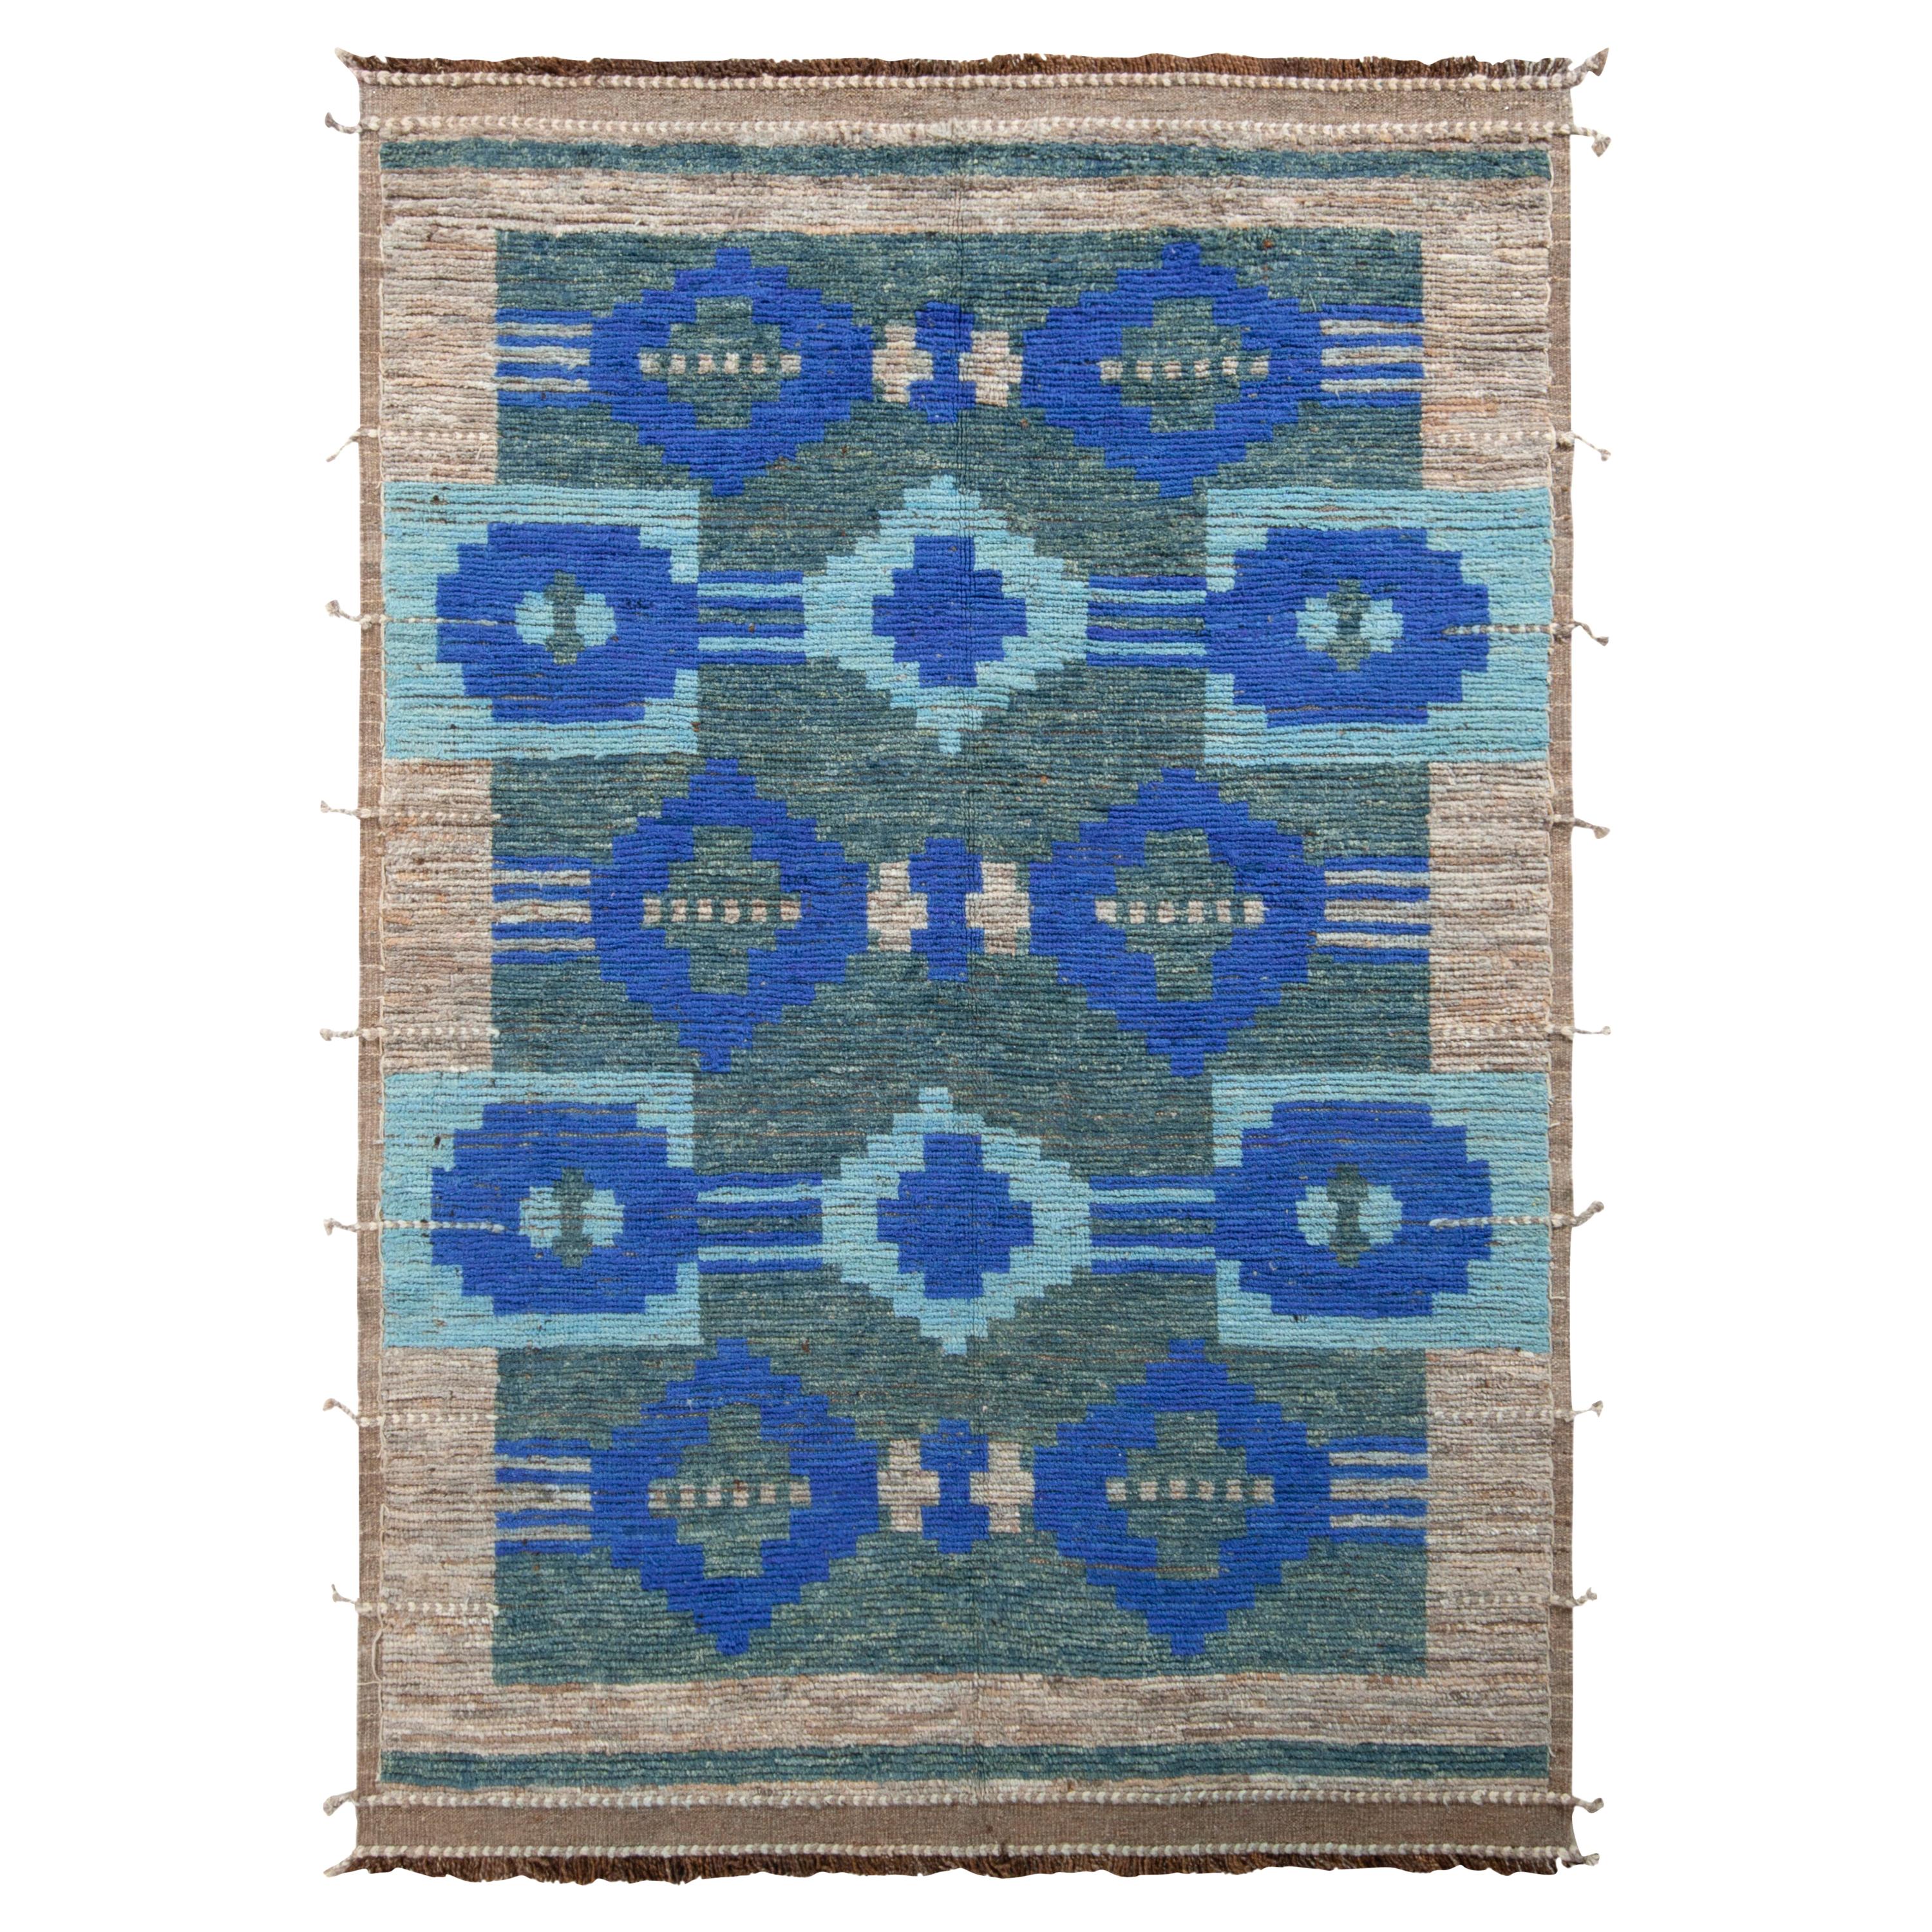 Moderner Teppich von Teppich & Kilims in Blau und Braun mit geometrischem Muster